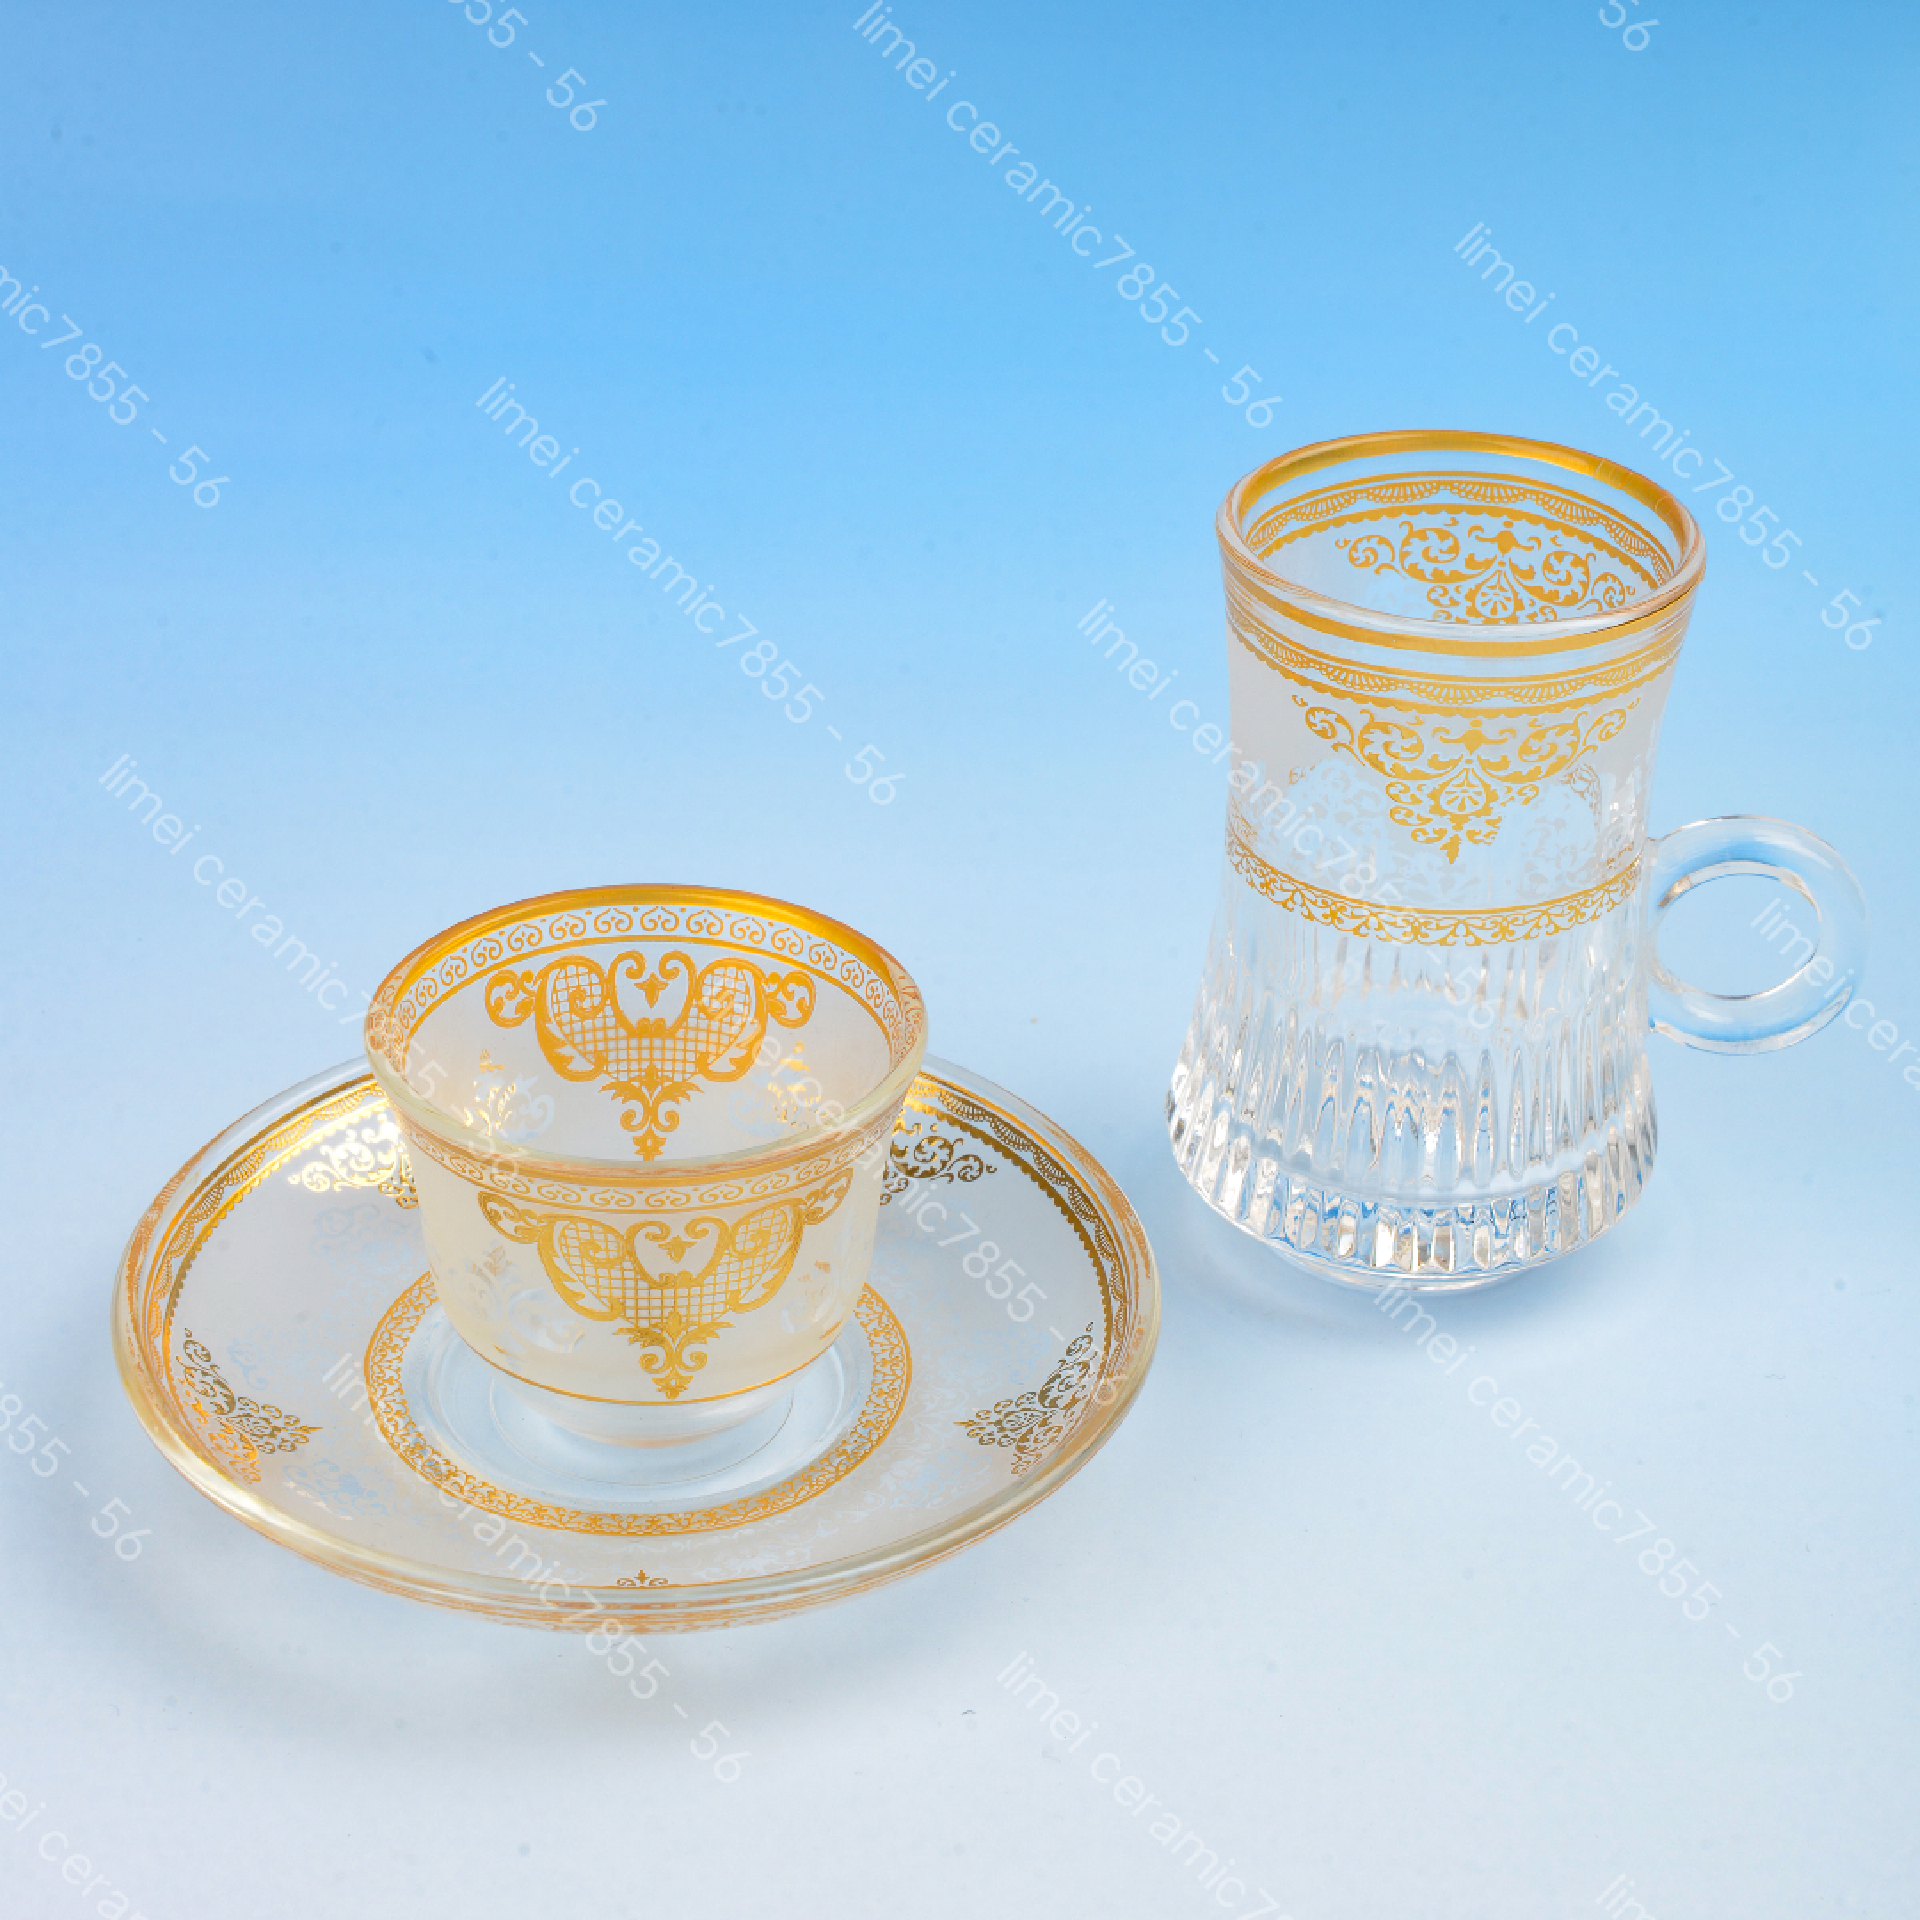 玻璃杯玻璃碟18头月光杯六杯碟礼盒包装出口中东热卖款红茶咖啡杯碟